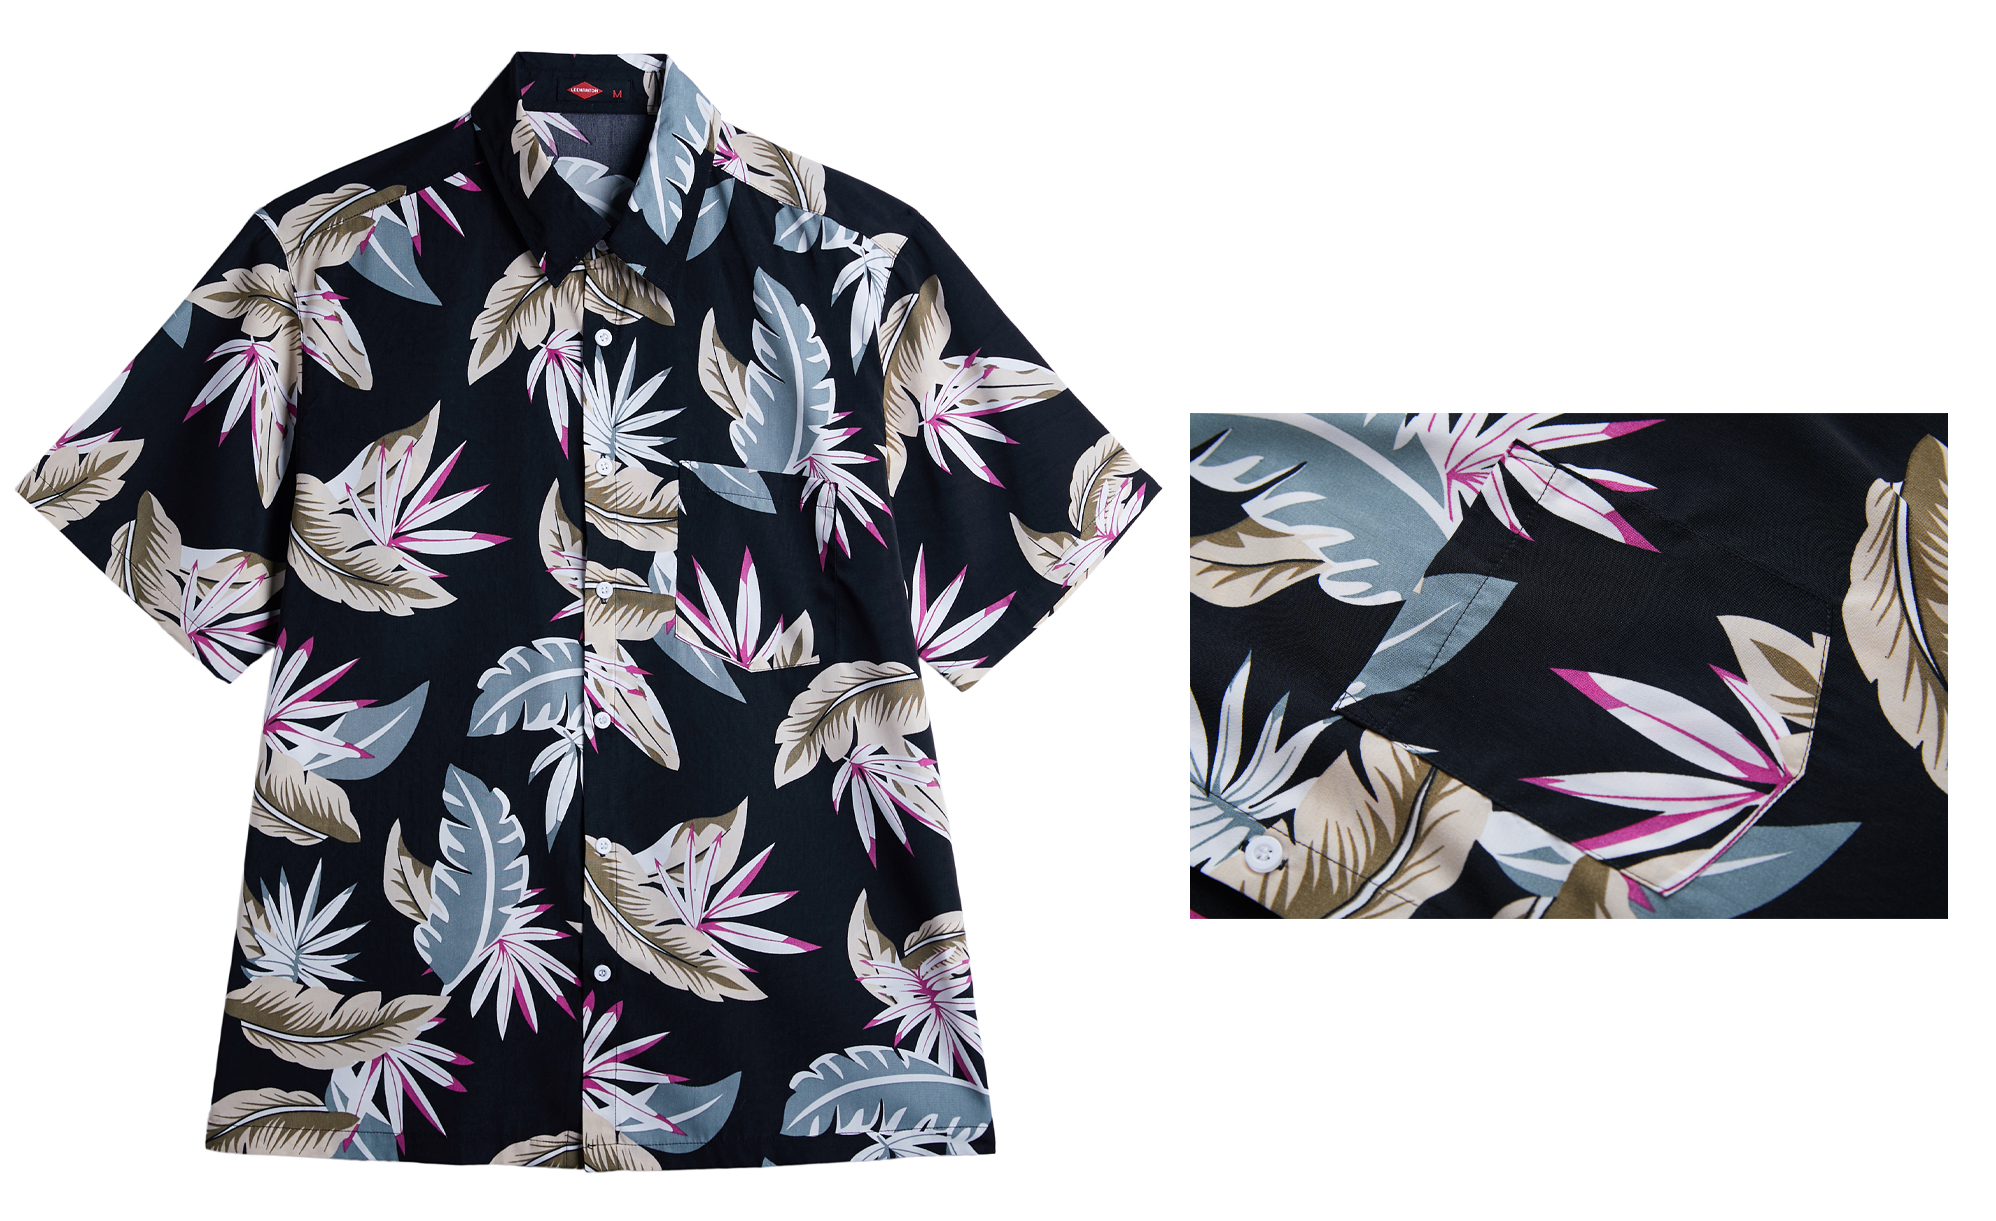 Men's Printed Button-Down Hawaiian Short Sleeve SHIRT w/ Tropical Leaf Print